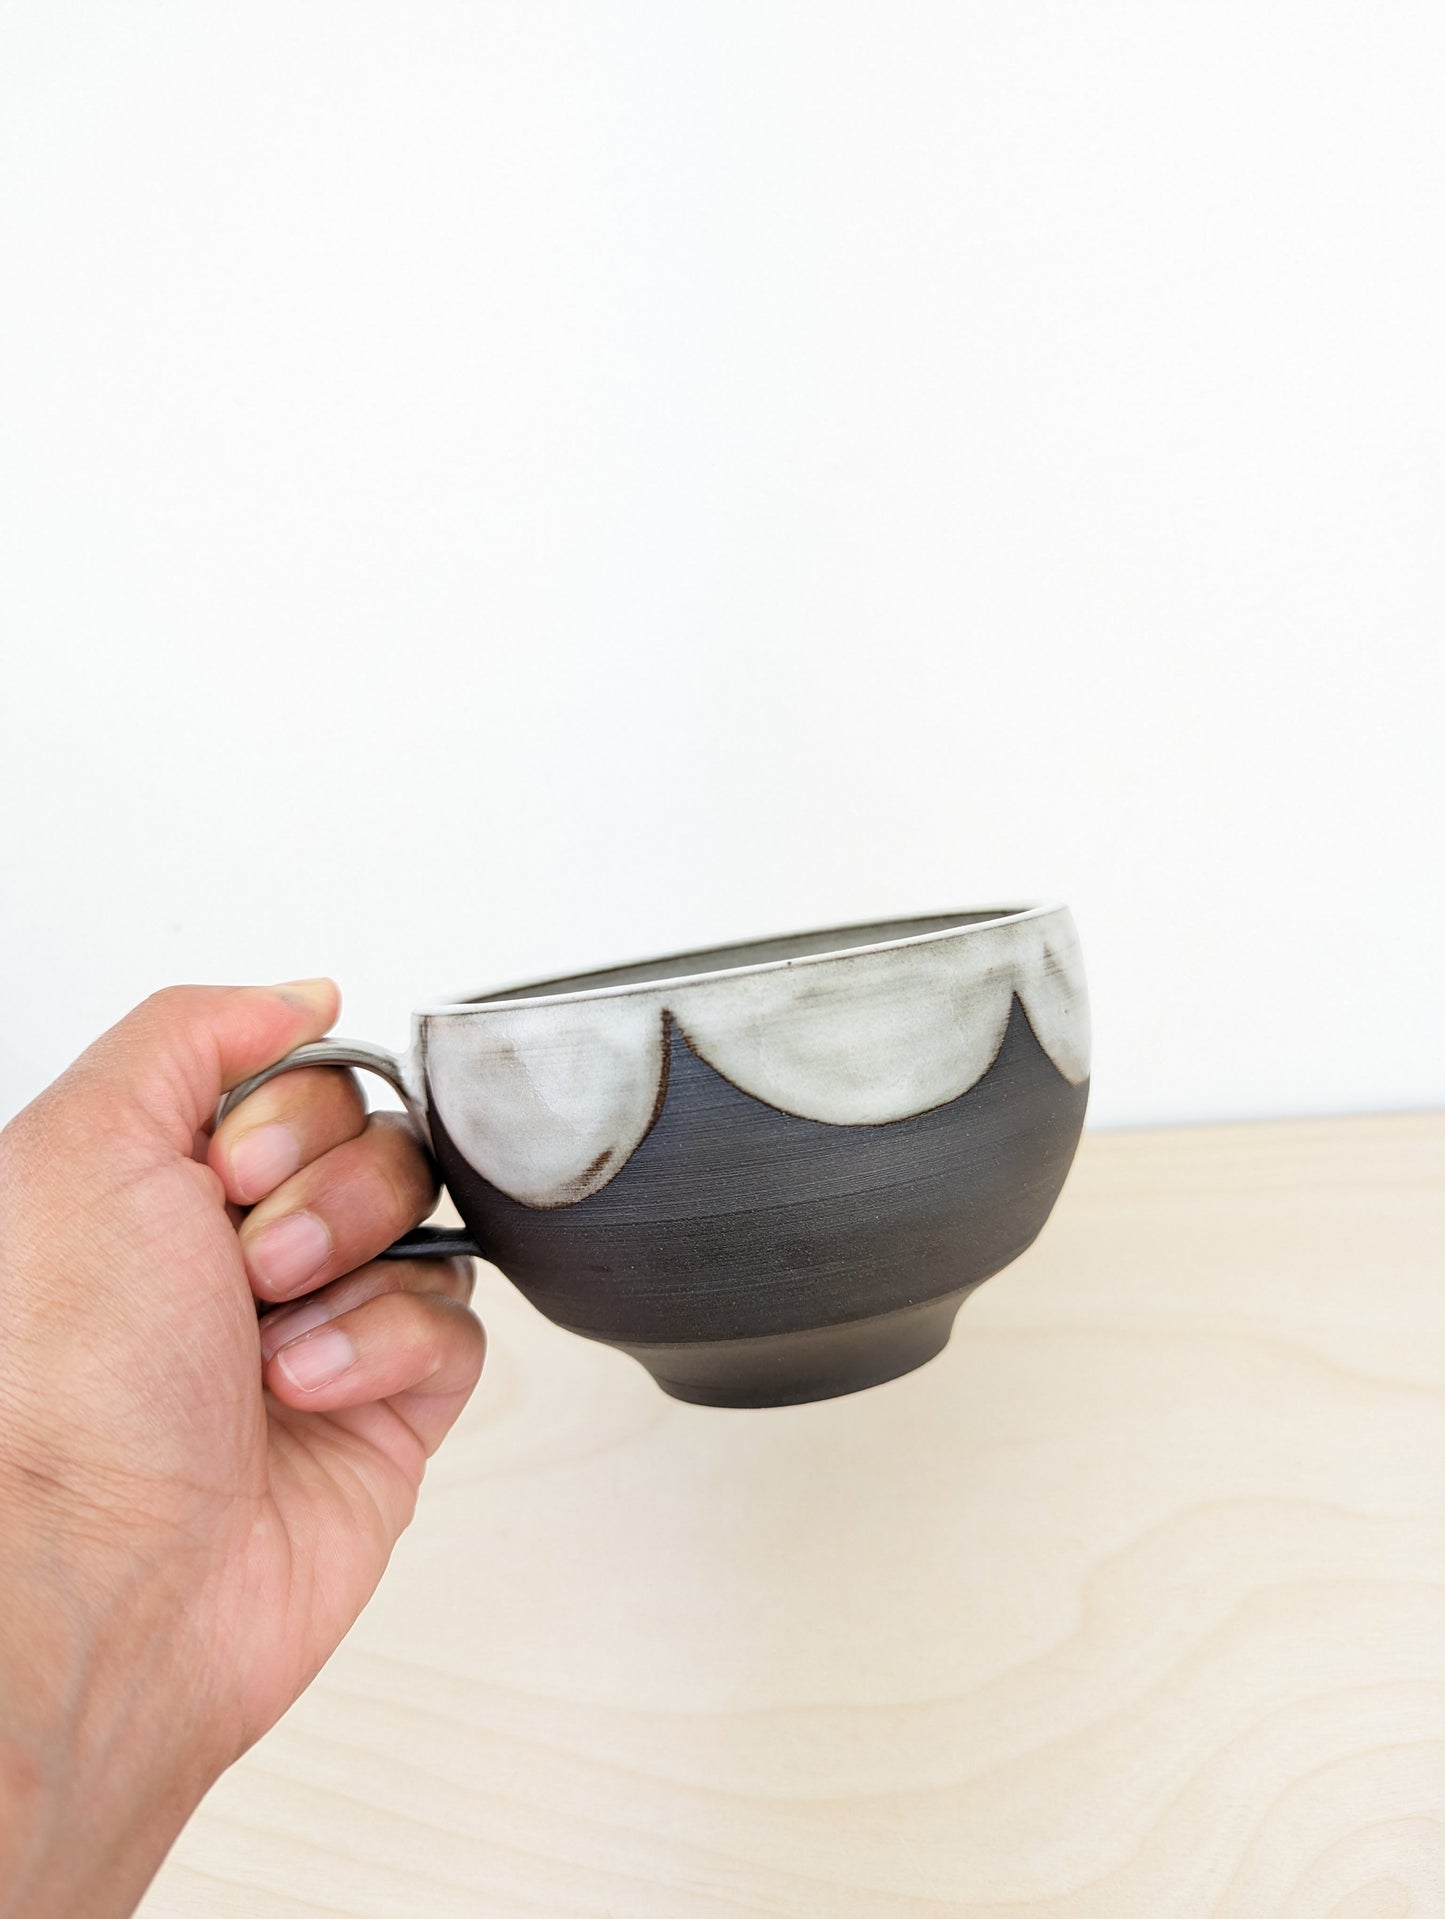 Deep Brown Mug with White Collar